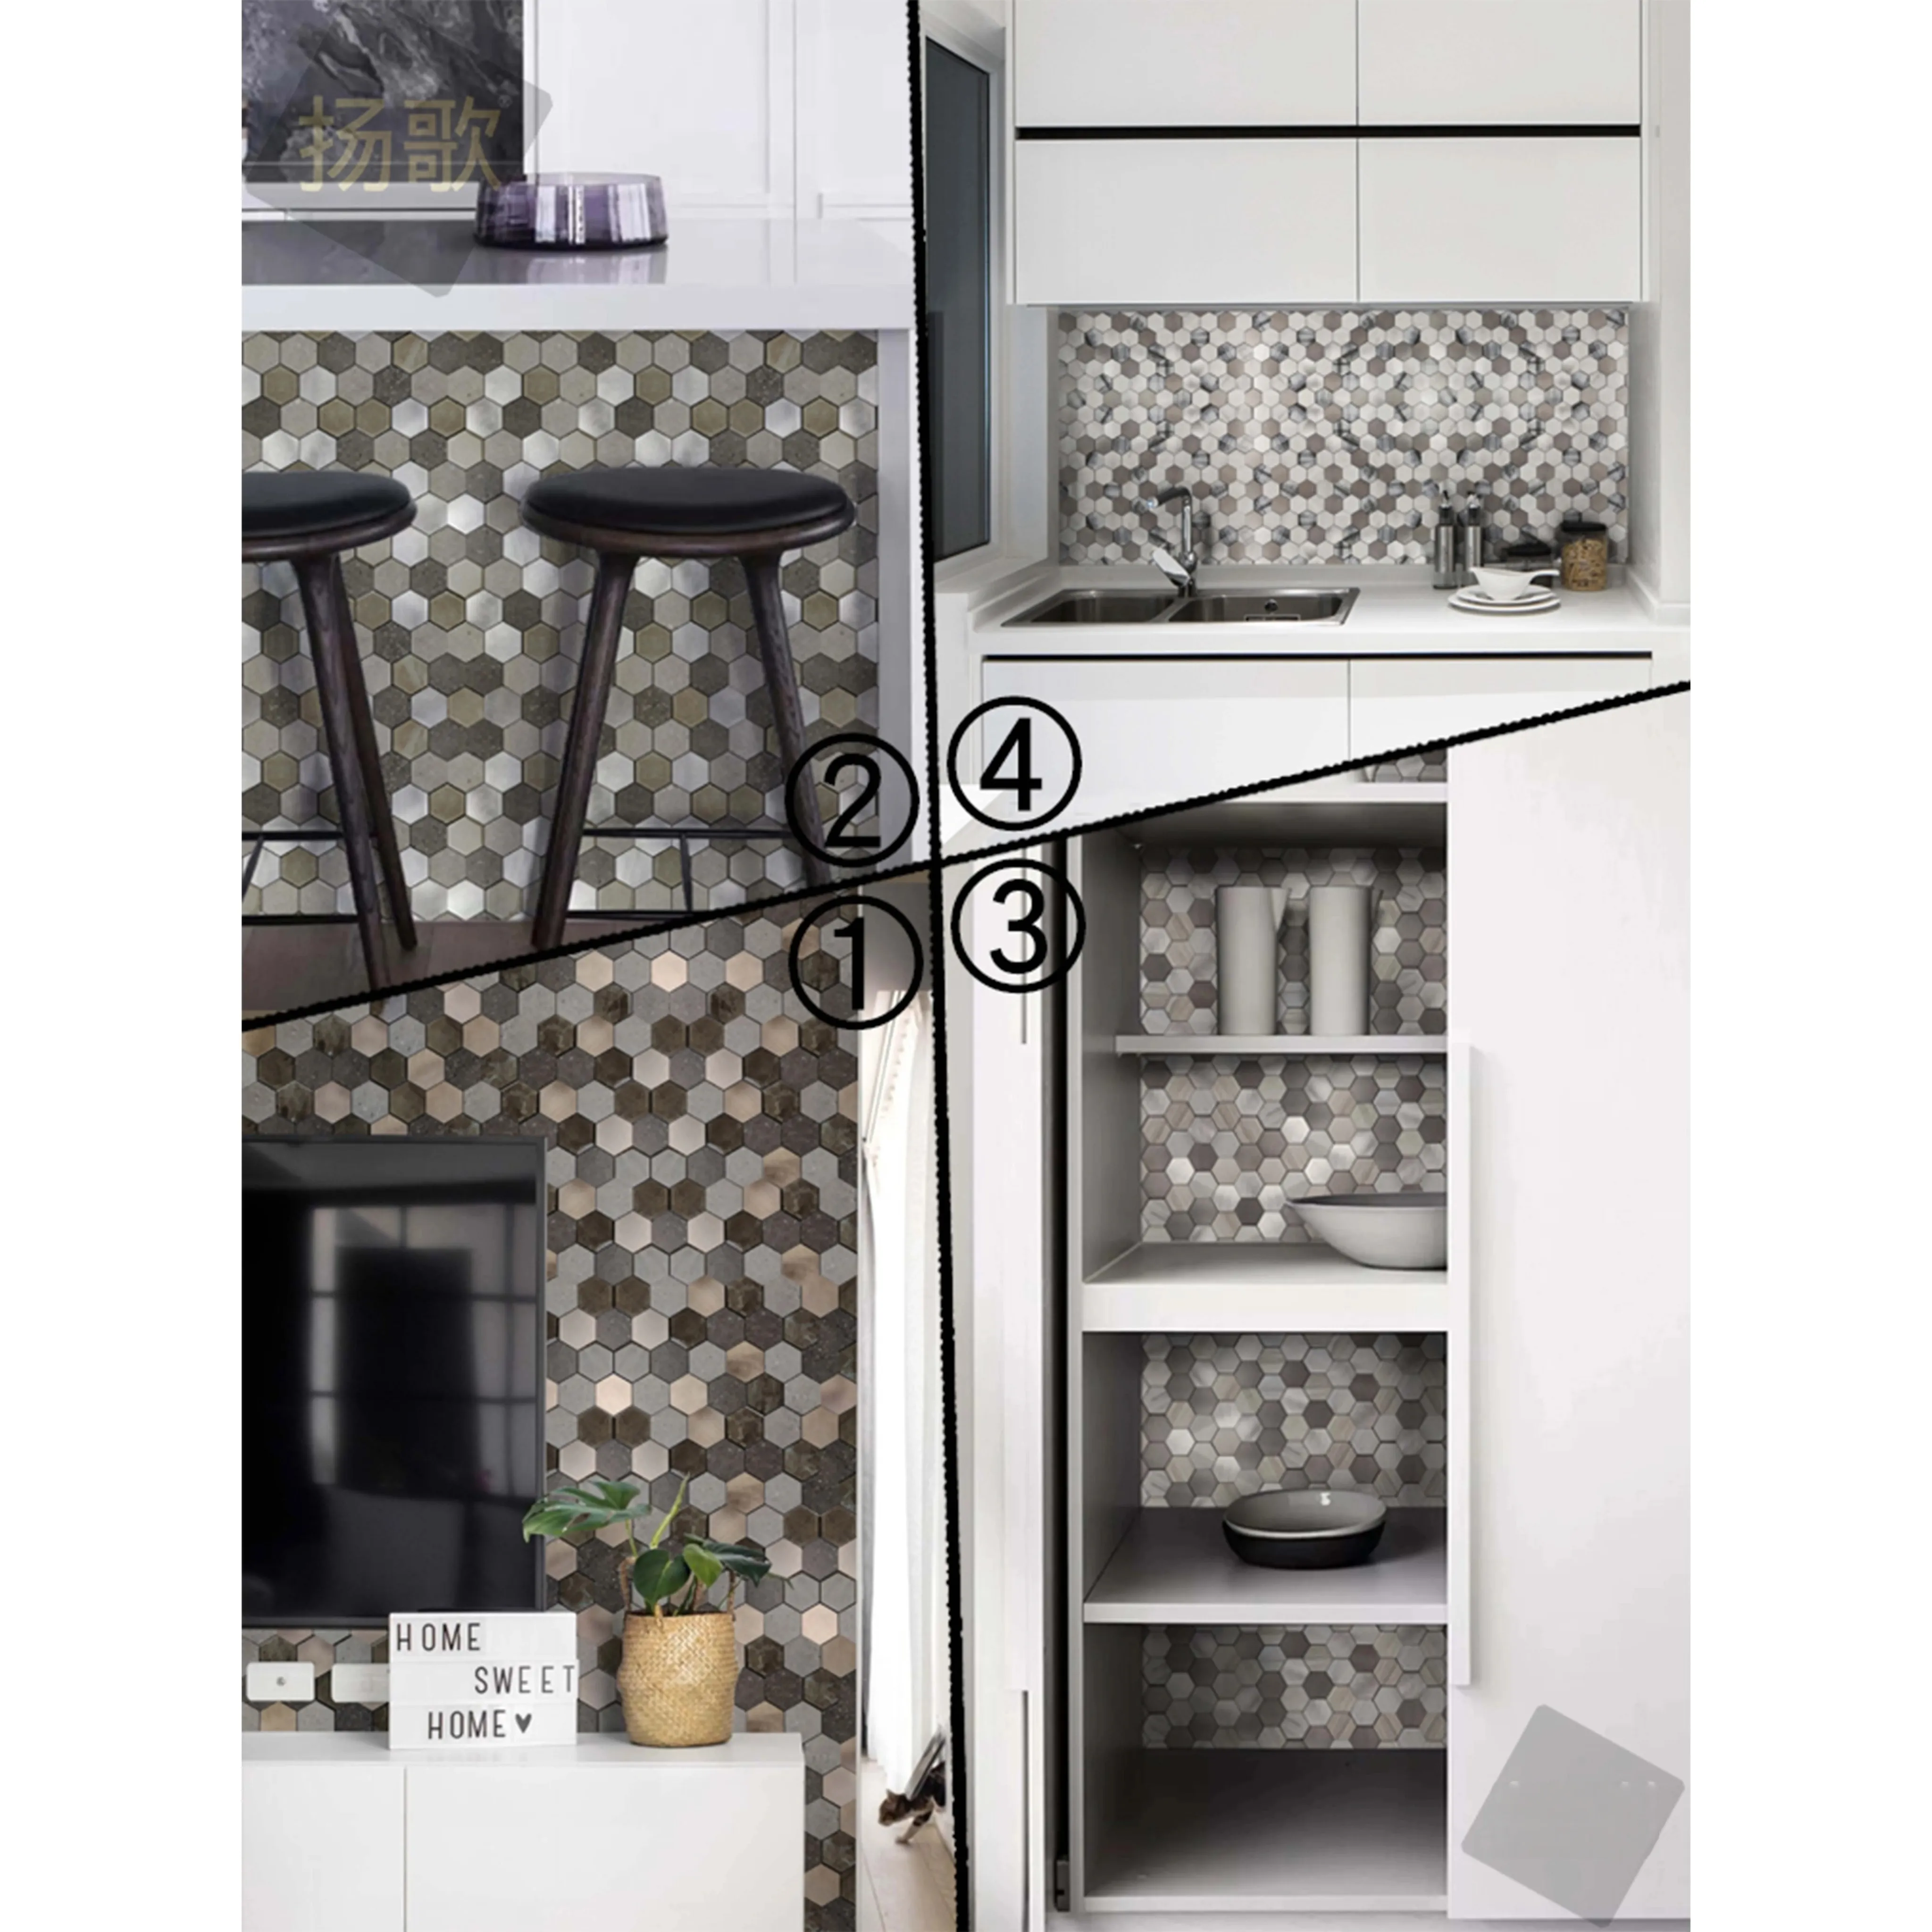 3d Backsplash Keramische Roestvrijstalen Metalen Wandtegel Stickers Voor Keuken